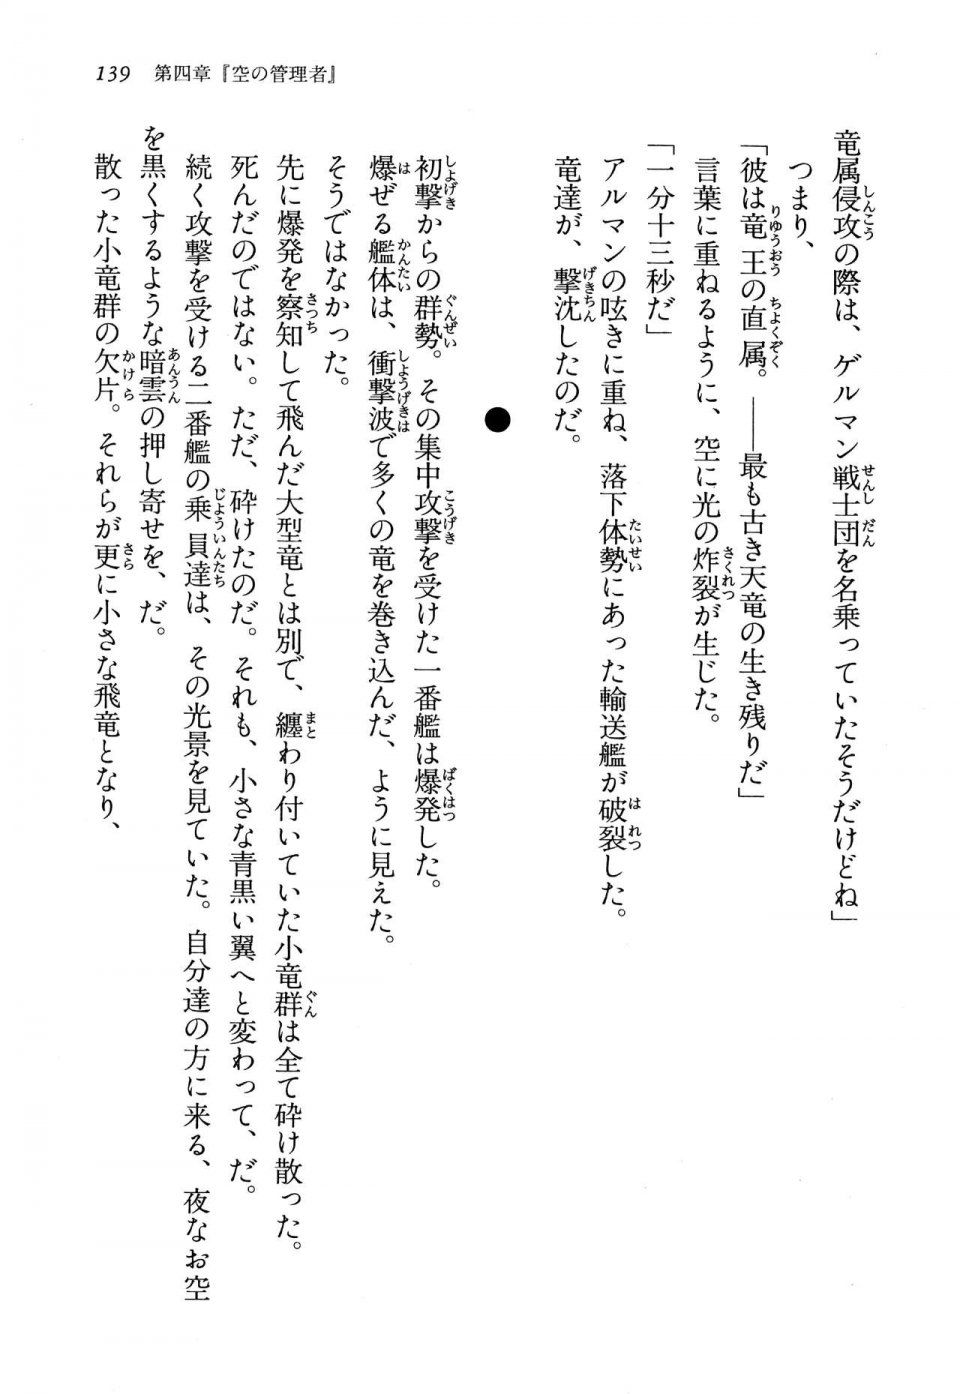 Kyoukai Senjou no Horizon LN Vol 13(6A) - Photo #139